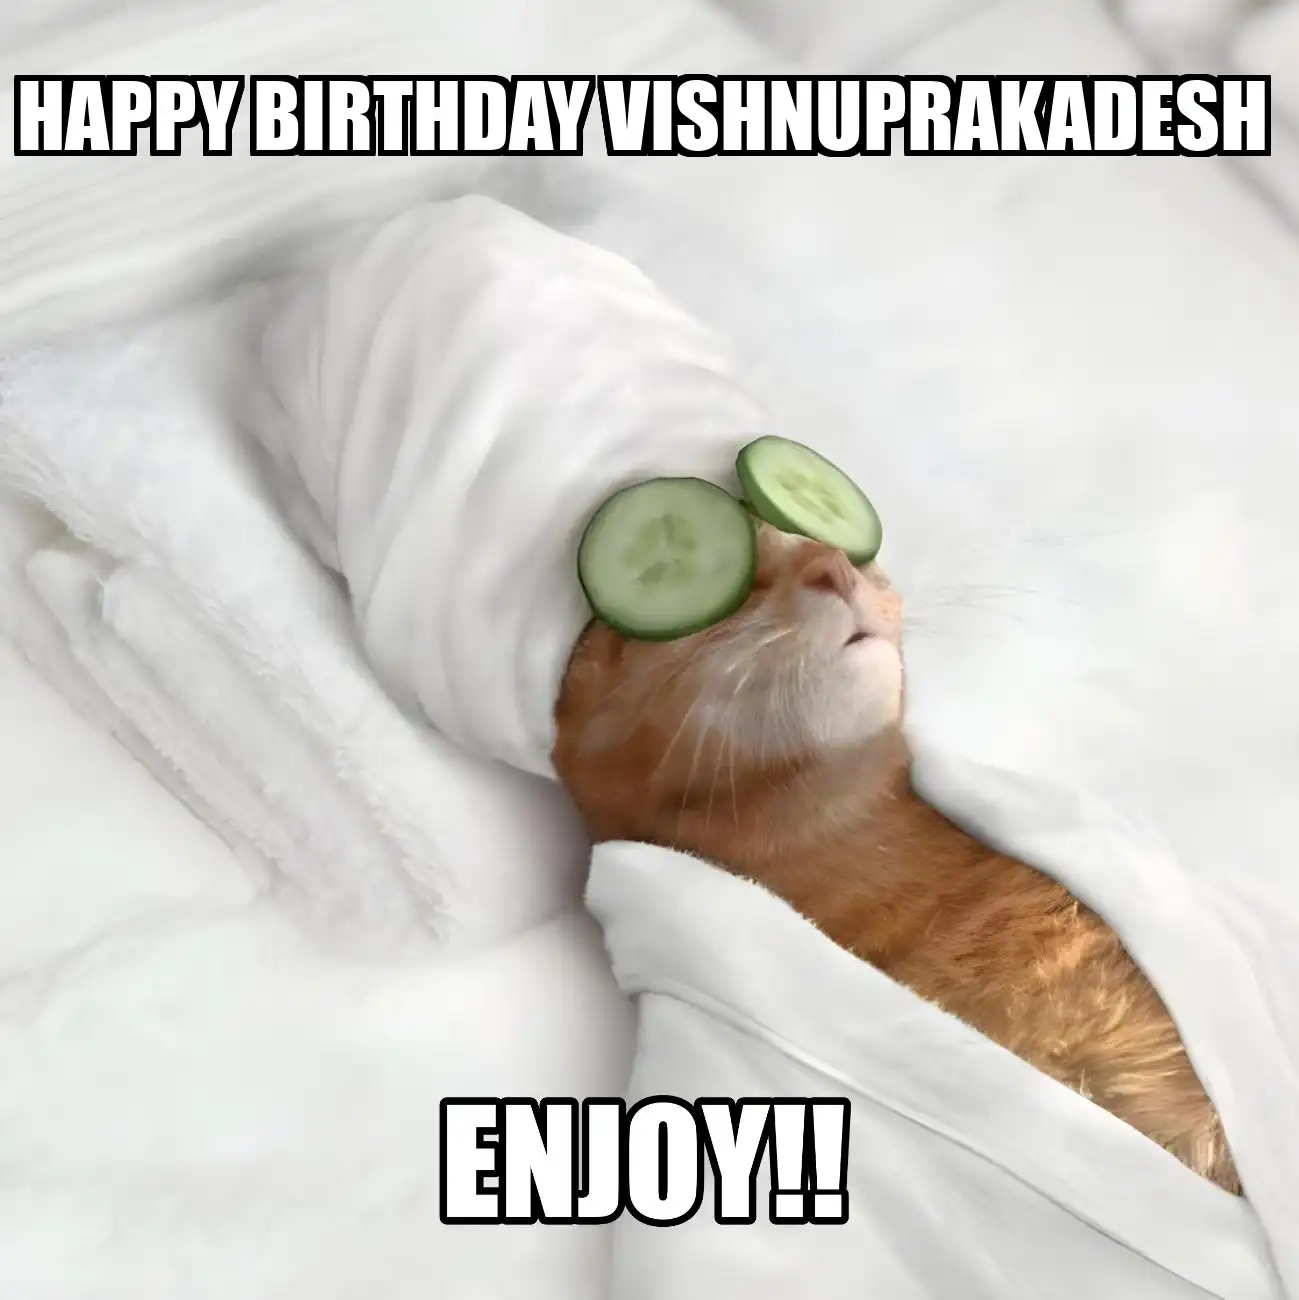 Happy Birthday Vishnuprakadesh Enjoy Cat Meme